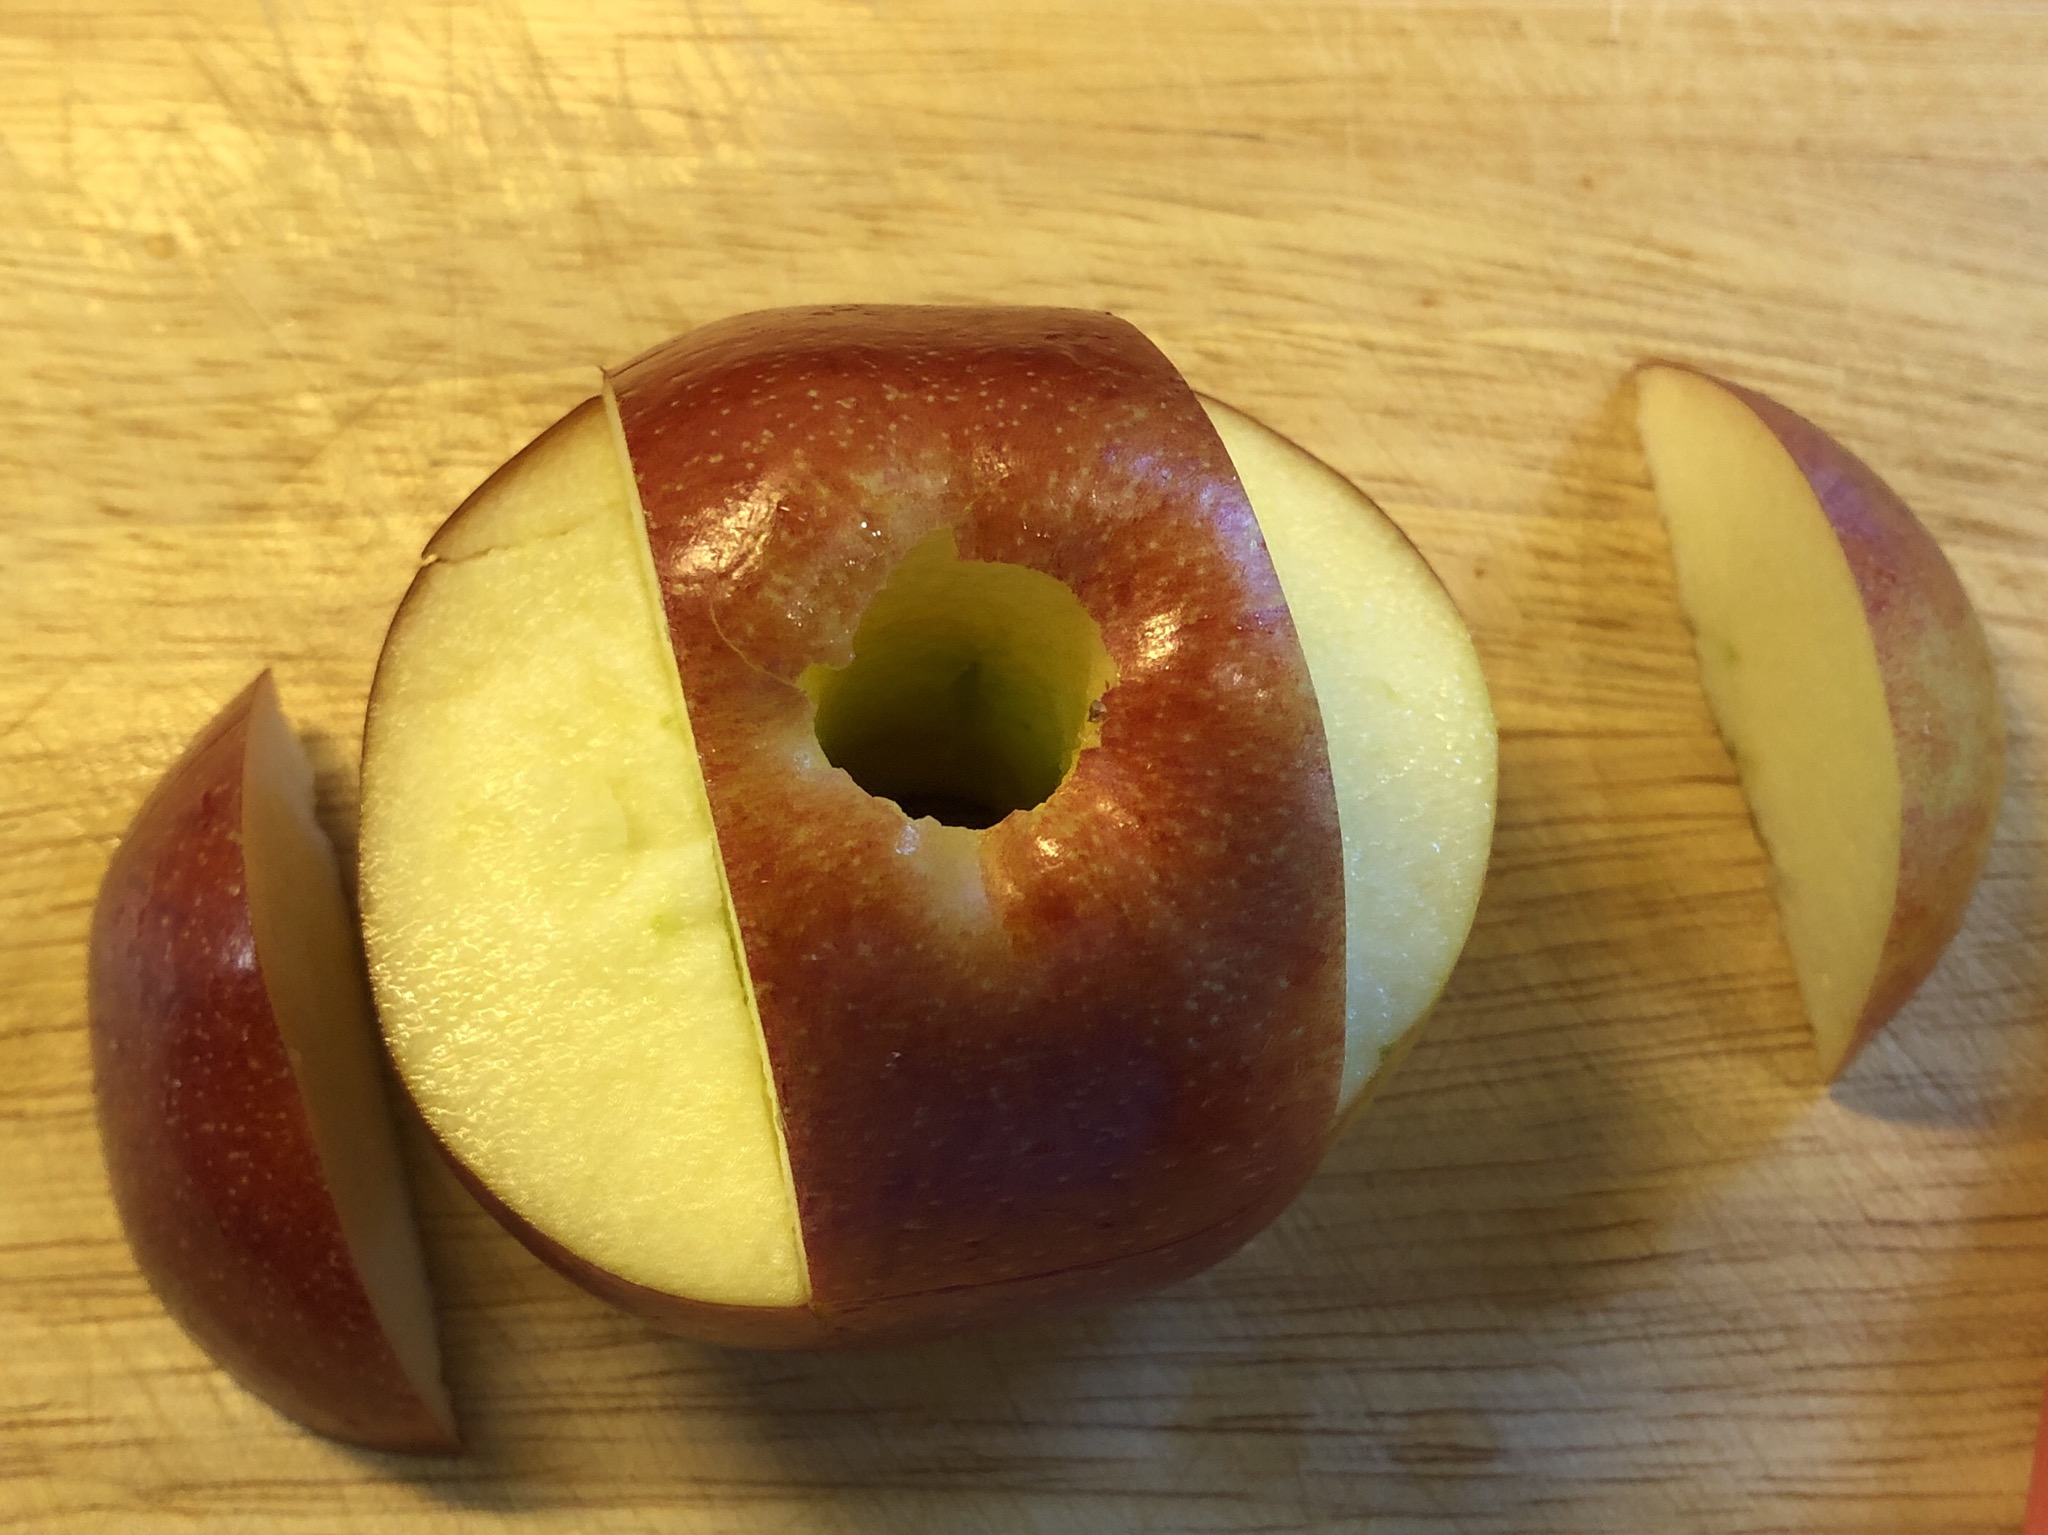 Bild zum Schritt 6 für die Kinder-Beschäftigung: 'So sieht der Apfel dann aus! Die beiden seitlichen Apfelstücke...'